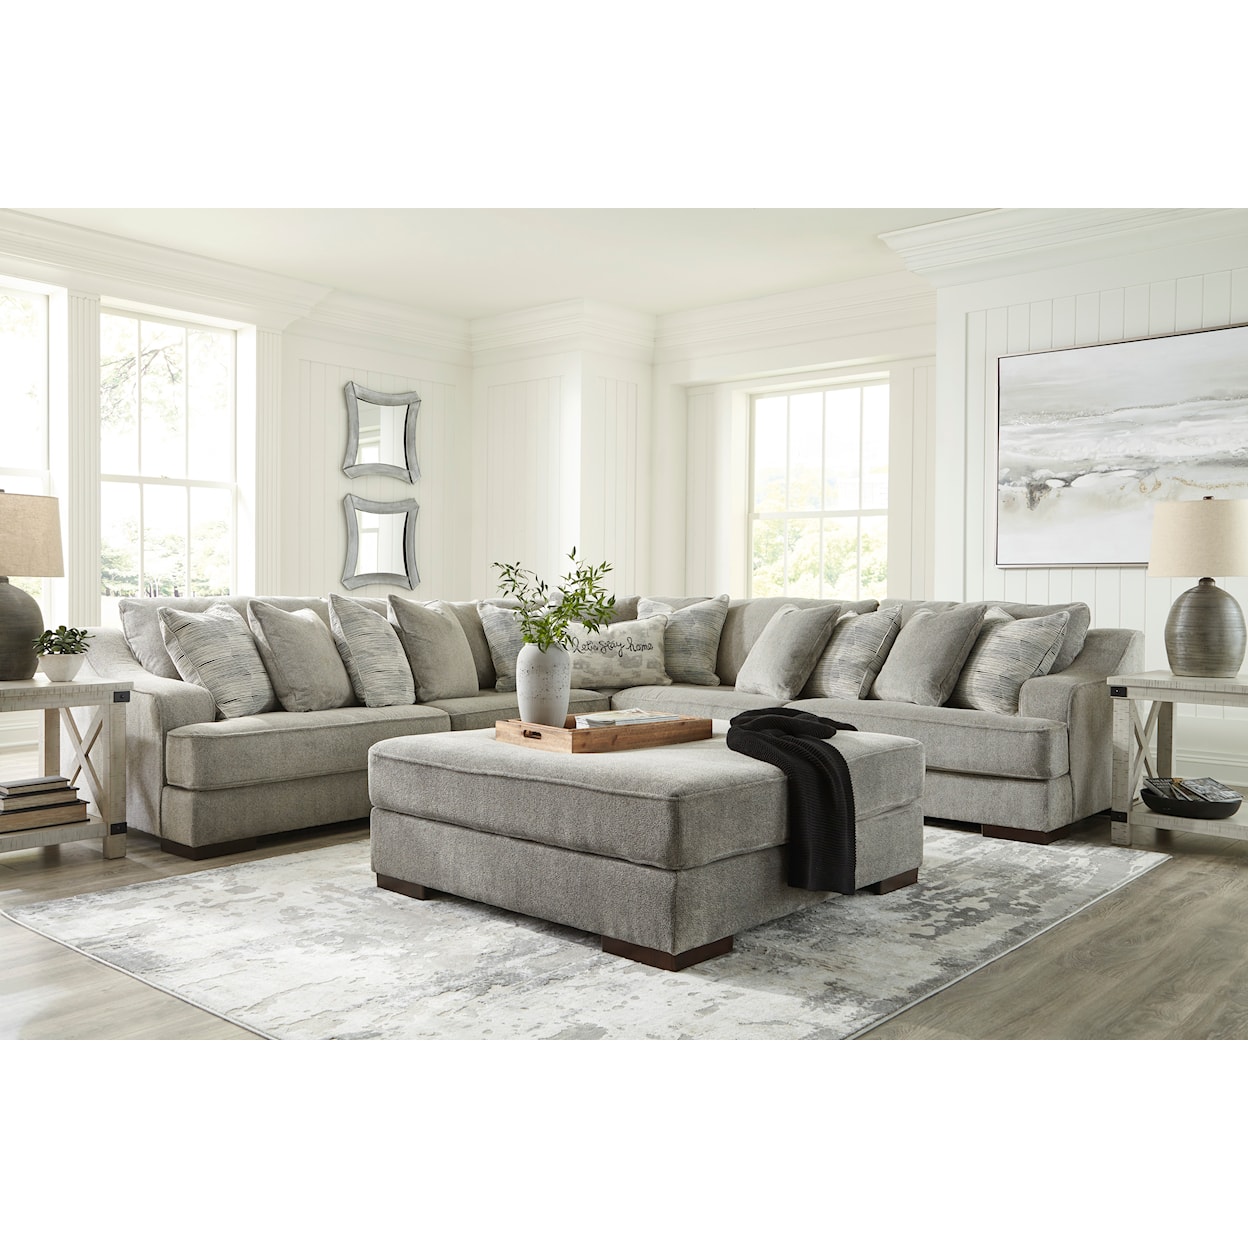 StyleLine Bayless 3-Piece Sectional Sofa